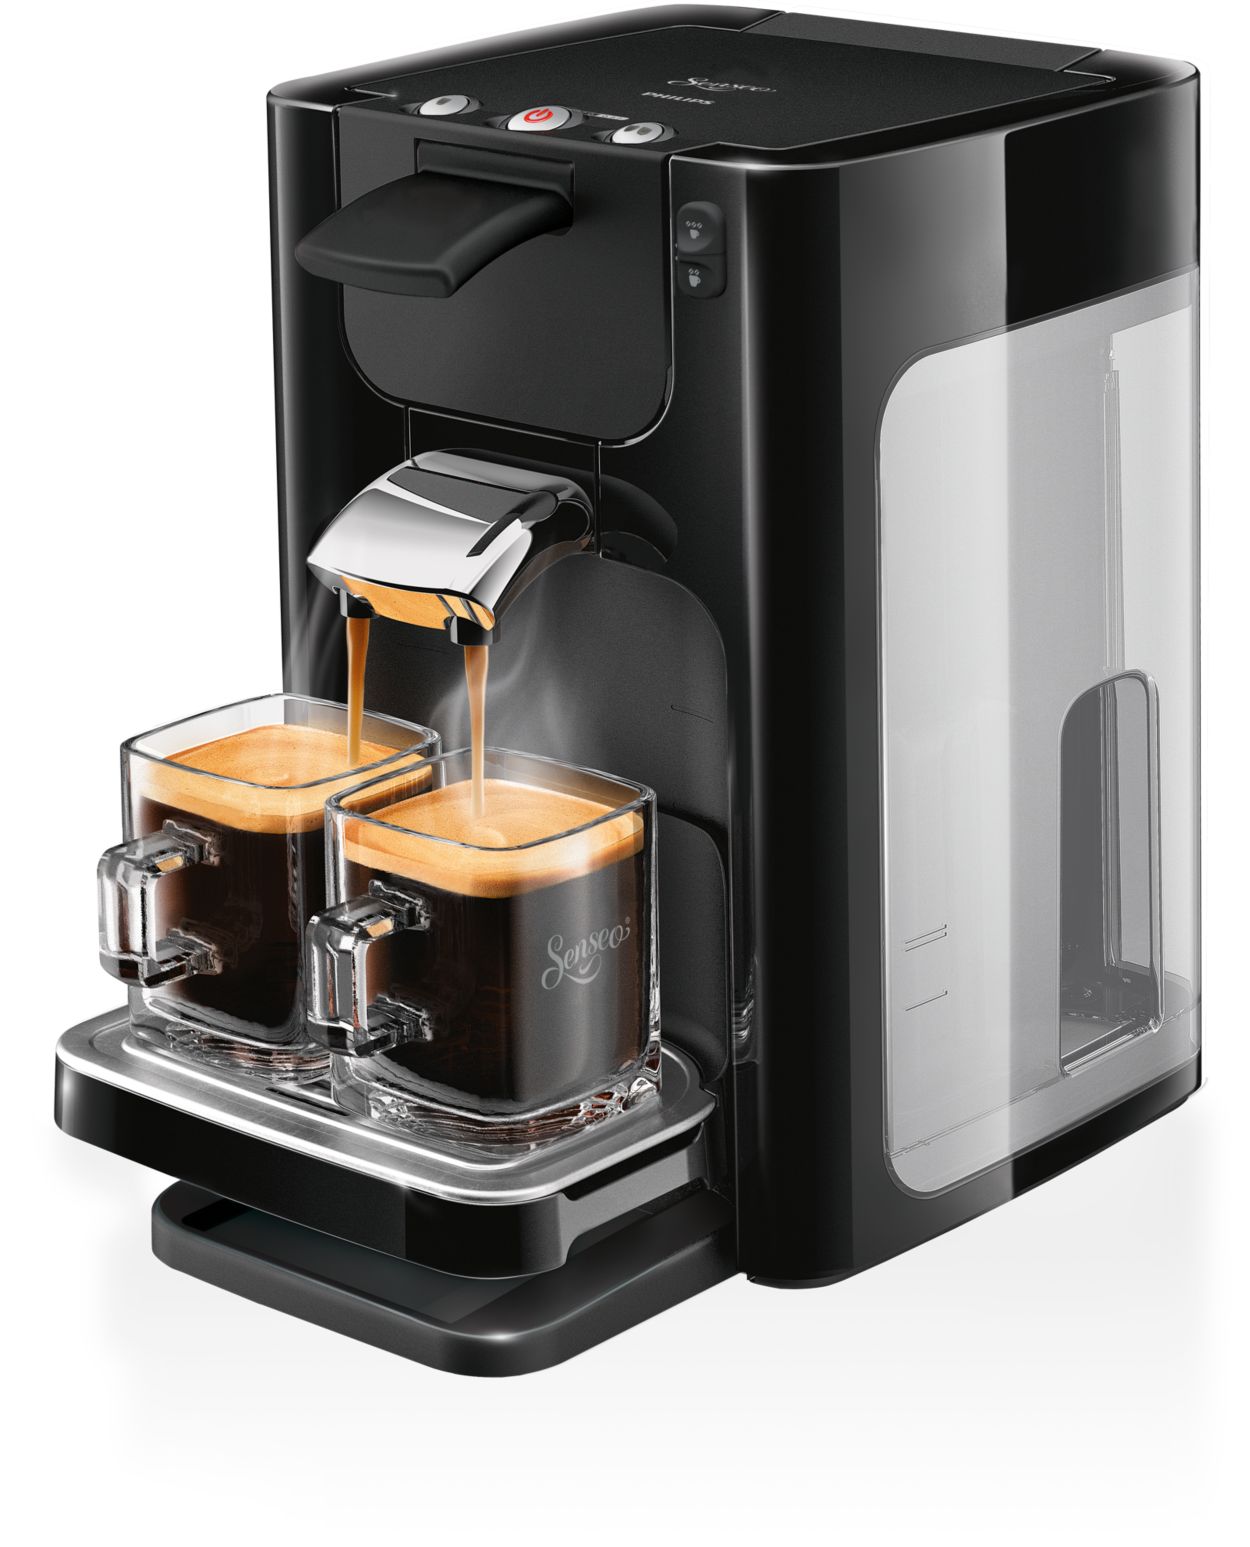 Quadrante Coffee pod machine HD7864/61